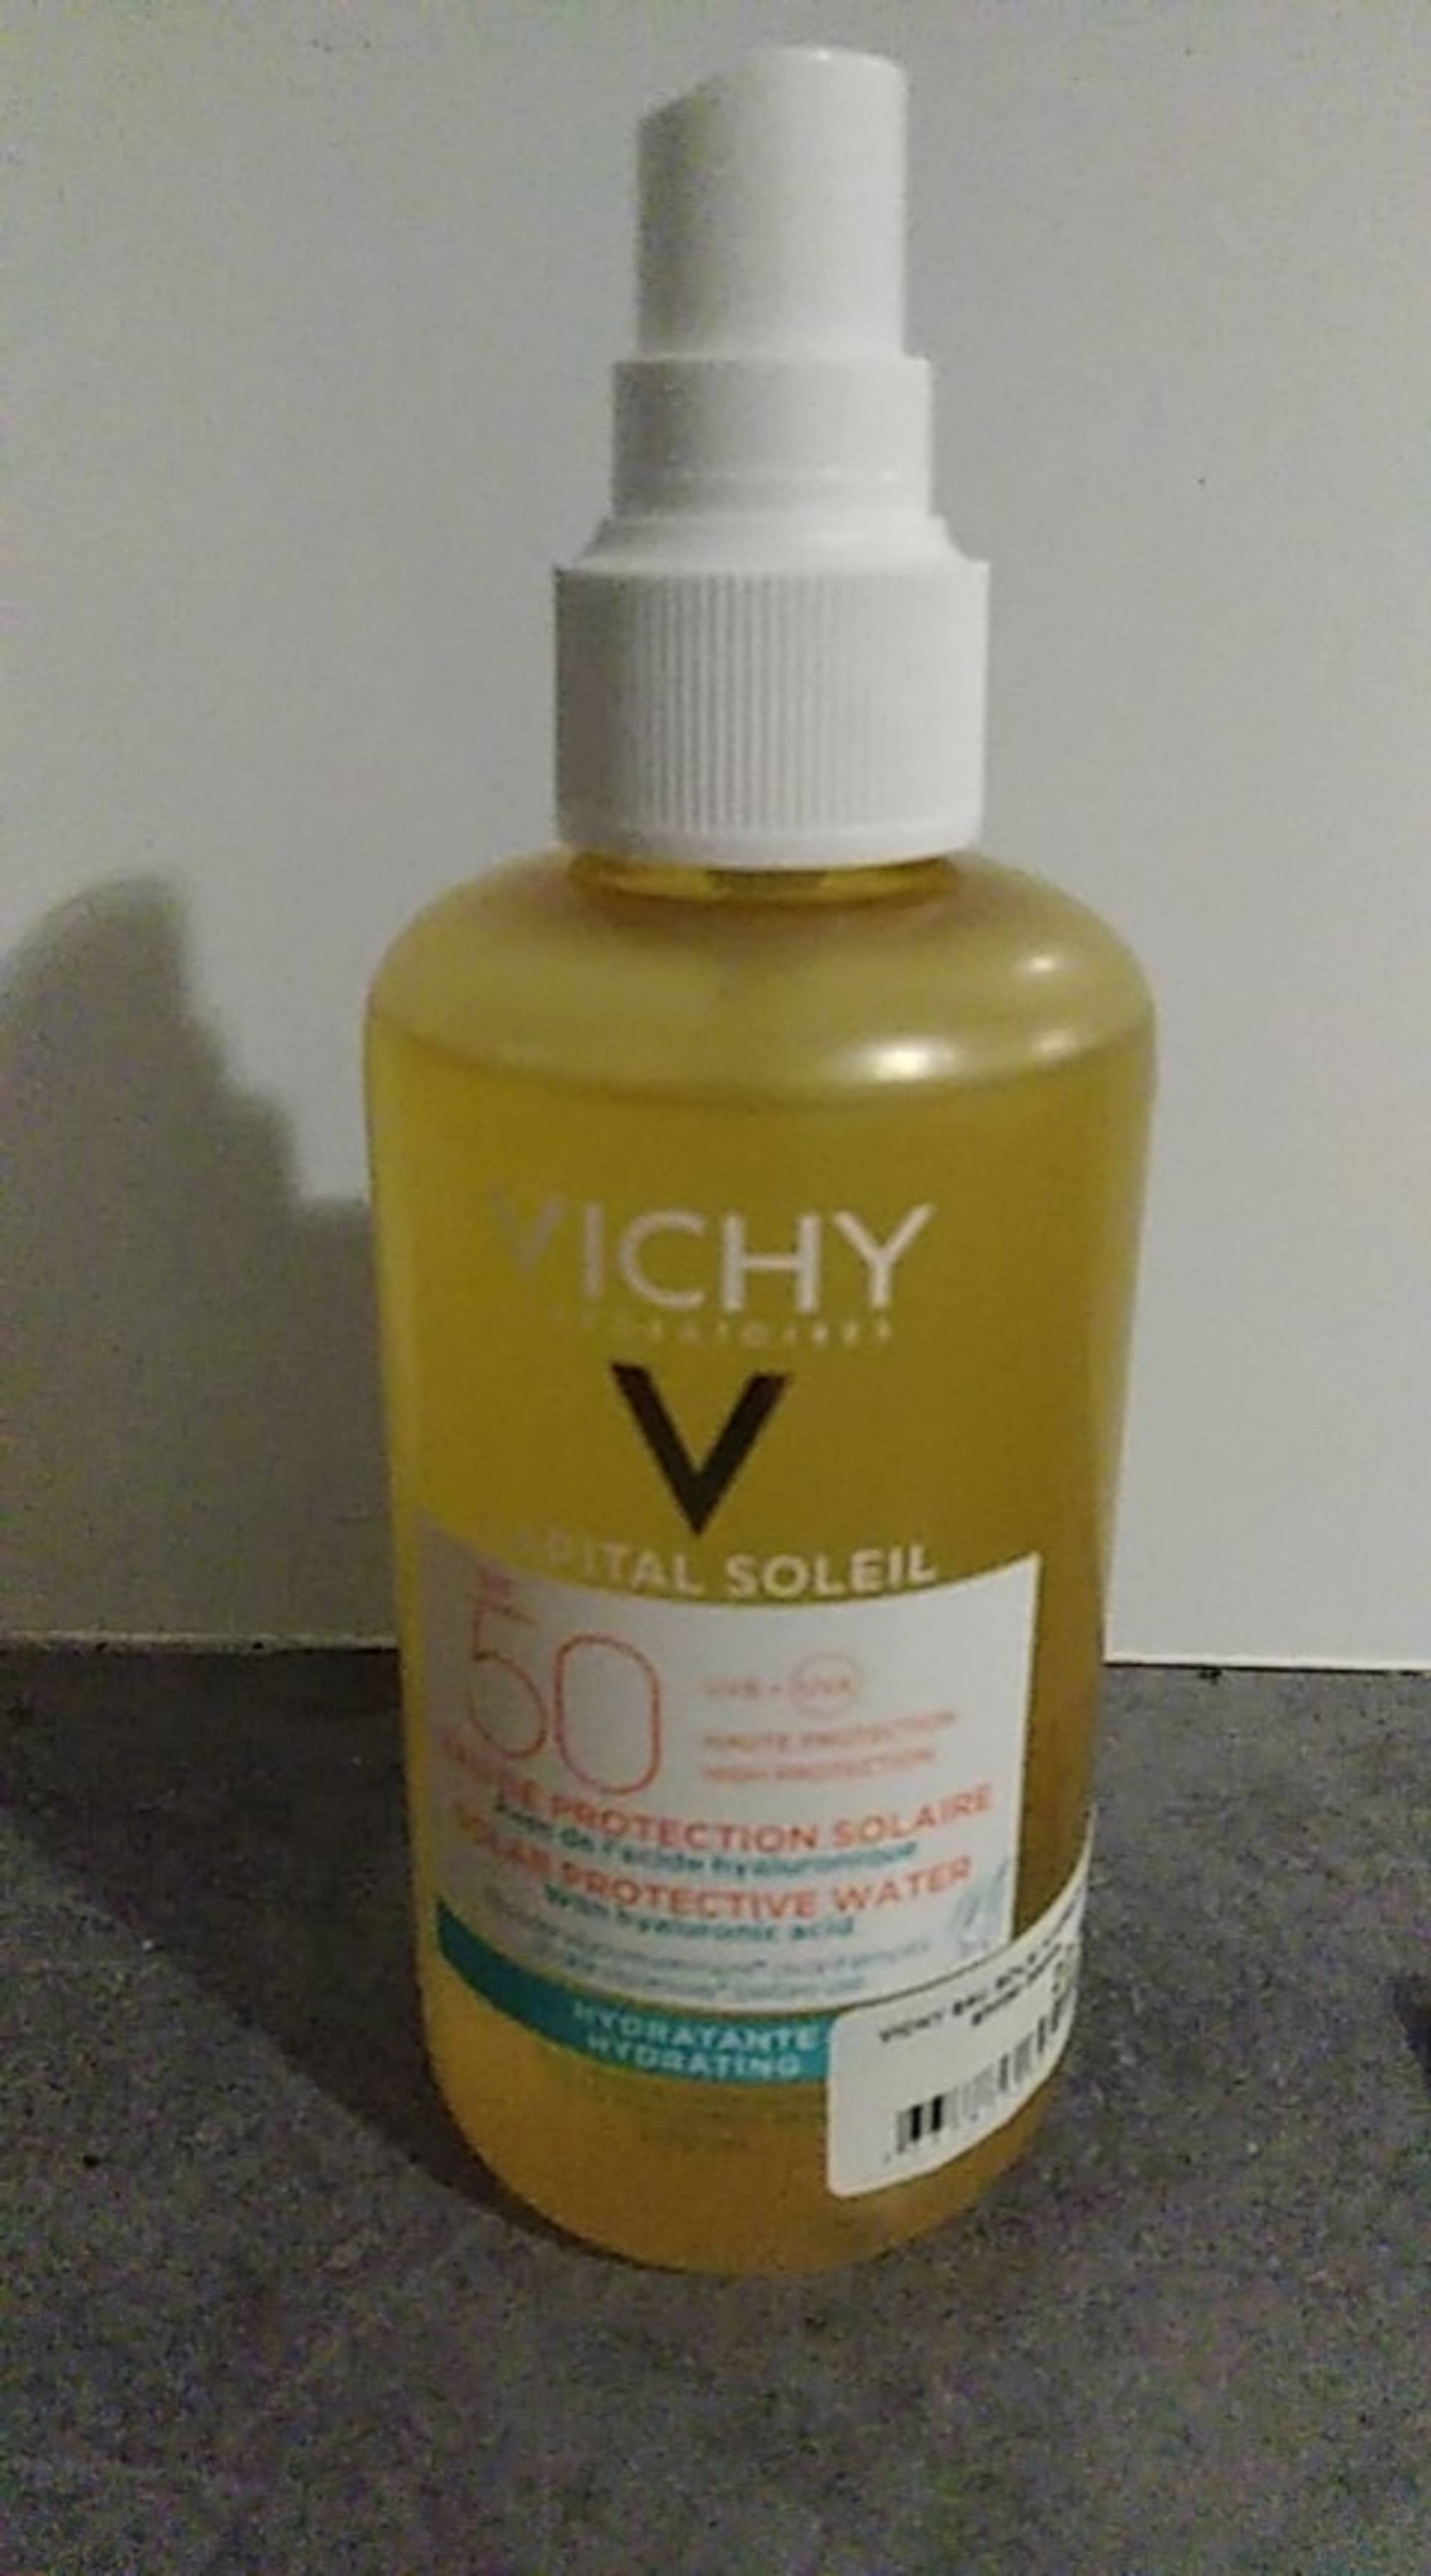 VICHY - Capital soleil - Eau de protection solaire SPF 50